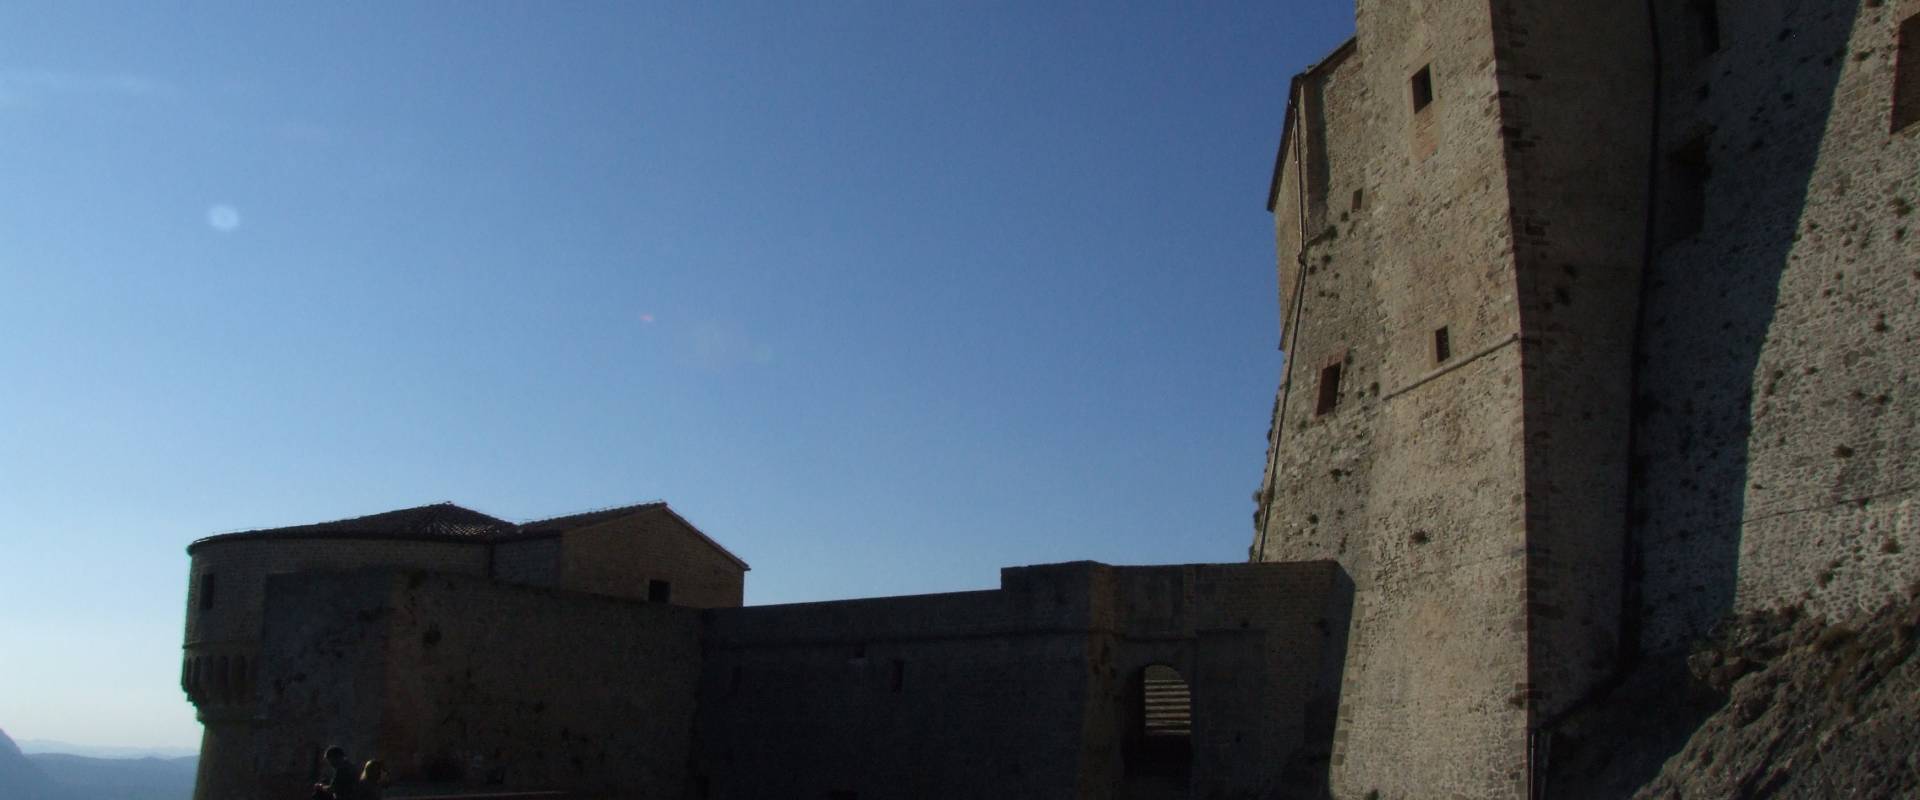 Fortezza di San Leo - 10 foto di Diego Baglieri